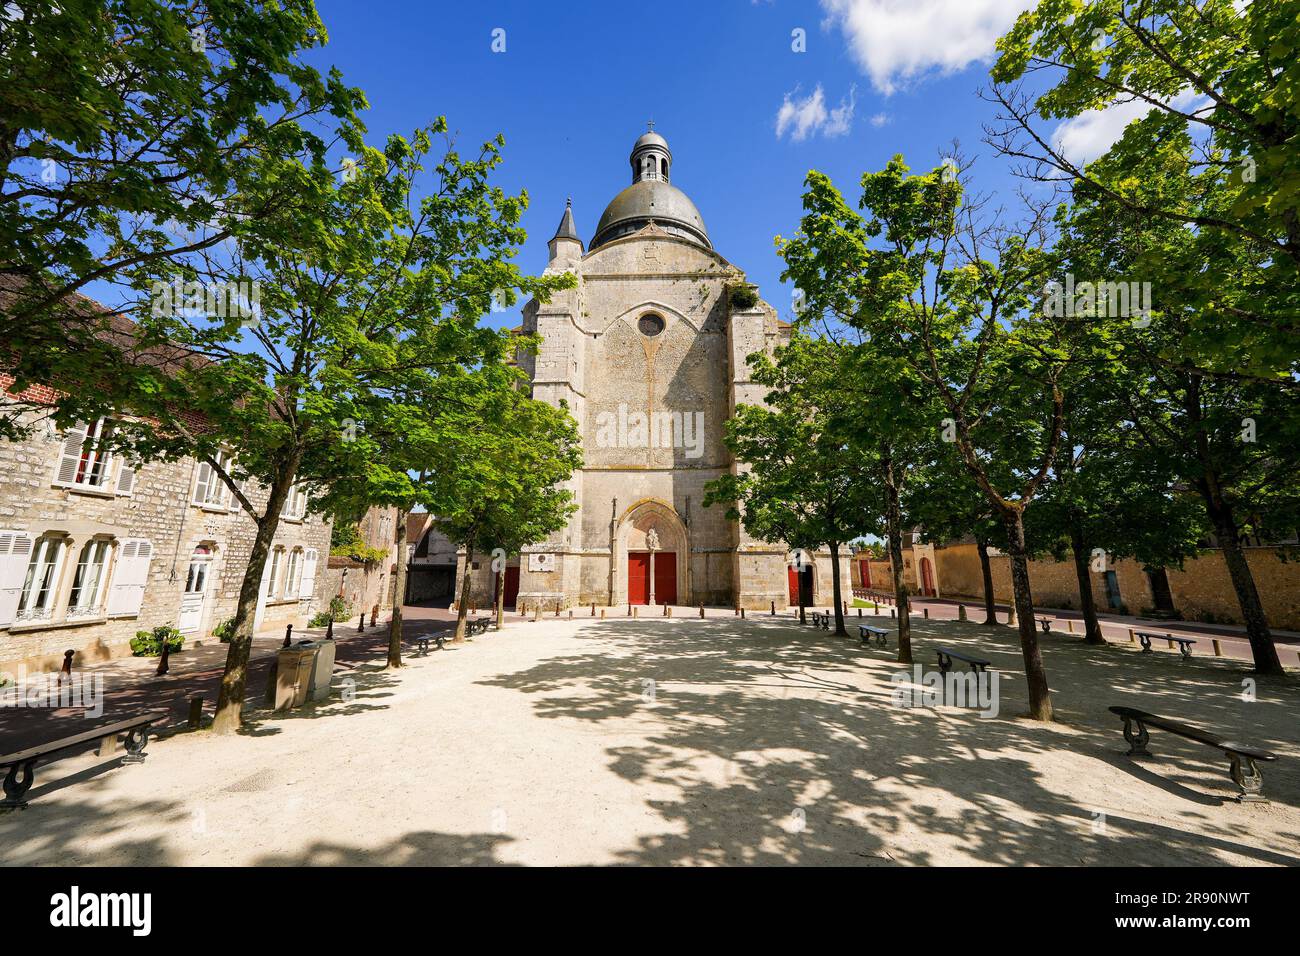 St. Quiriace Collegiate Church in Provins, eine mittelalterliche Stadt im französischen Departement seine et Marne in der Hauptstadtregion von Ile de France Stockfoto